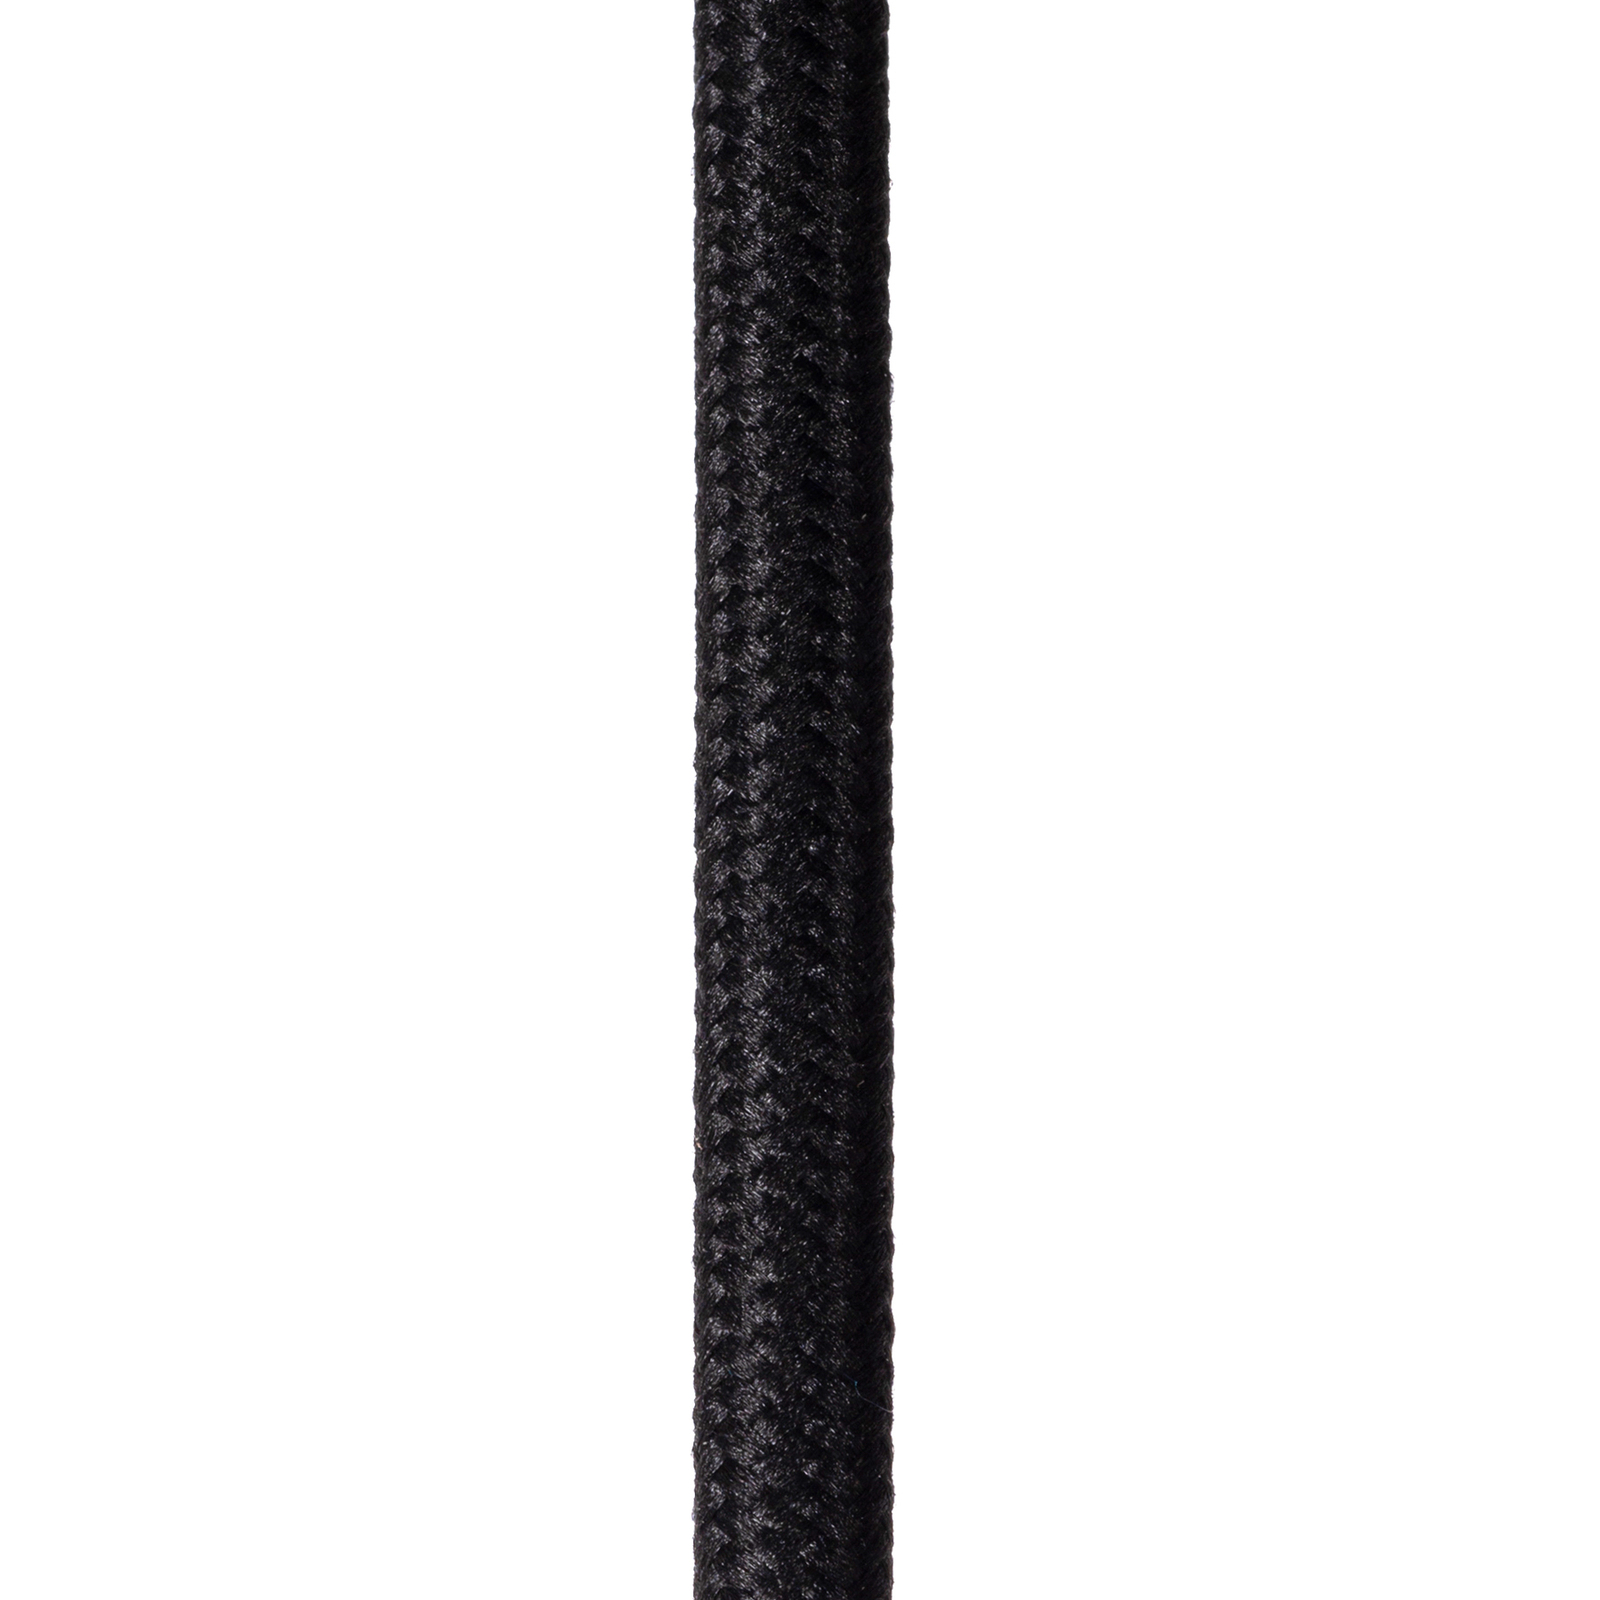 Suspension Siemon en acier, Ø 40 cm, noire